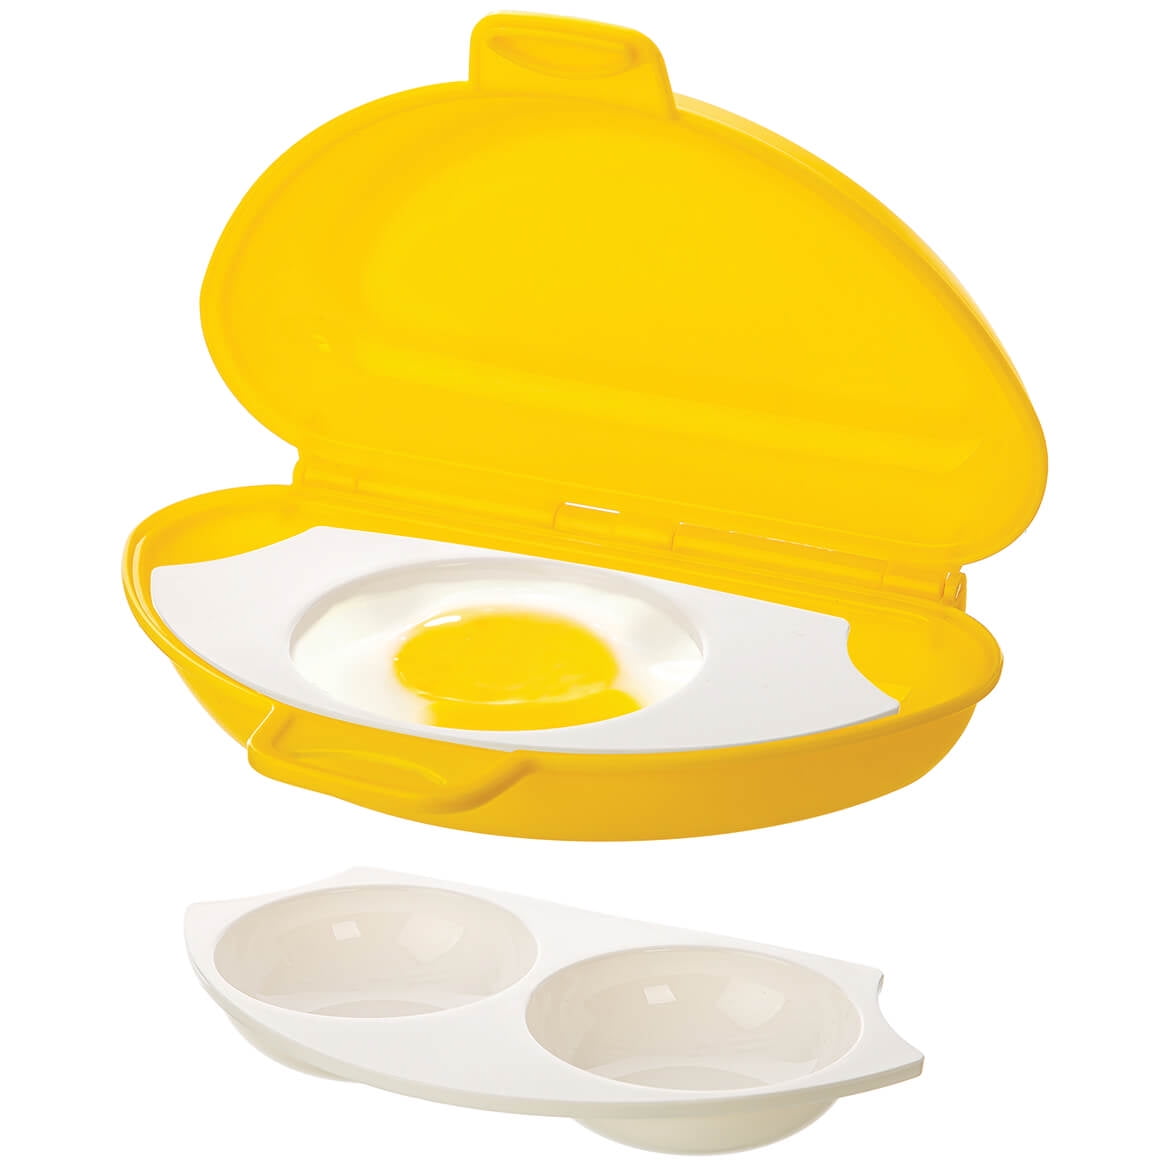 New Egg-tastic Microwave Egg Cooker & Poacher for Fast & Fluffy Eggs, Size: 7.76 x 4.72 x 4.72, White